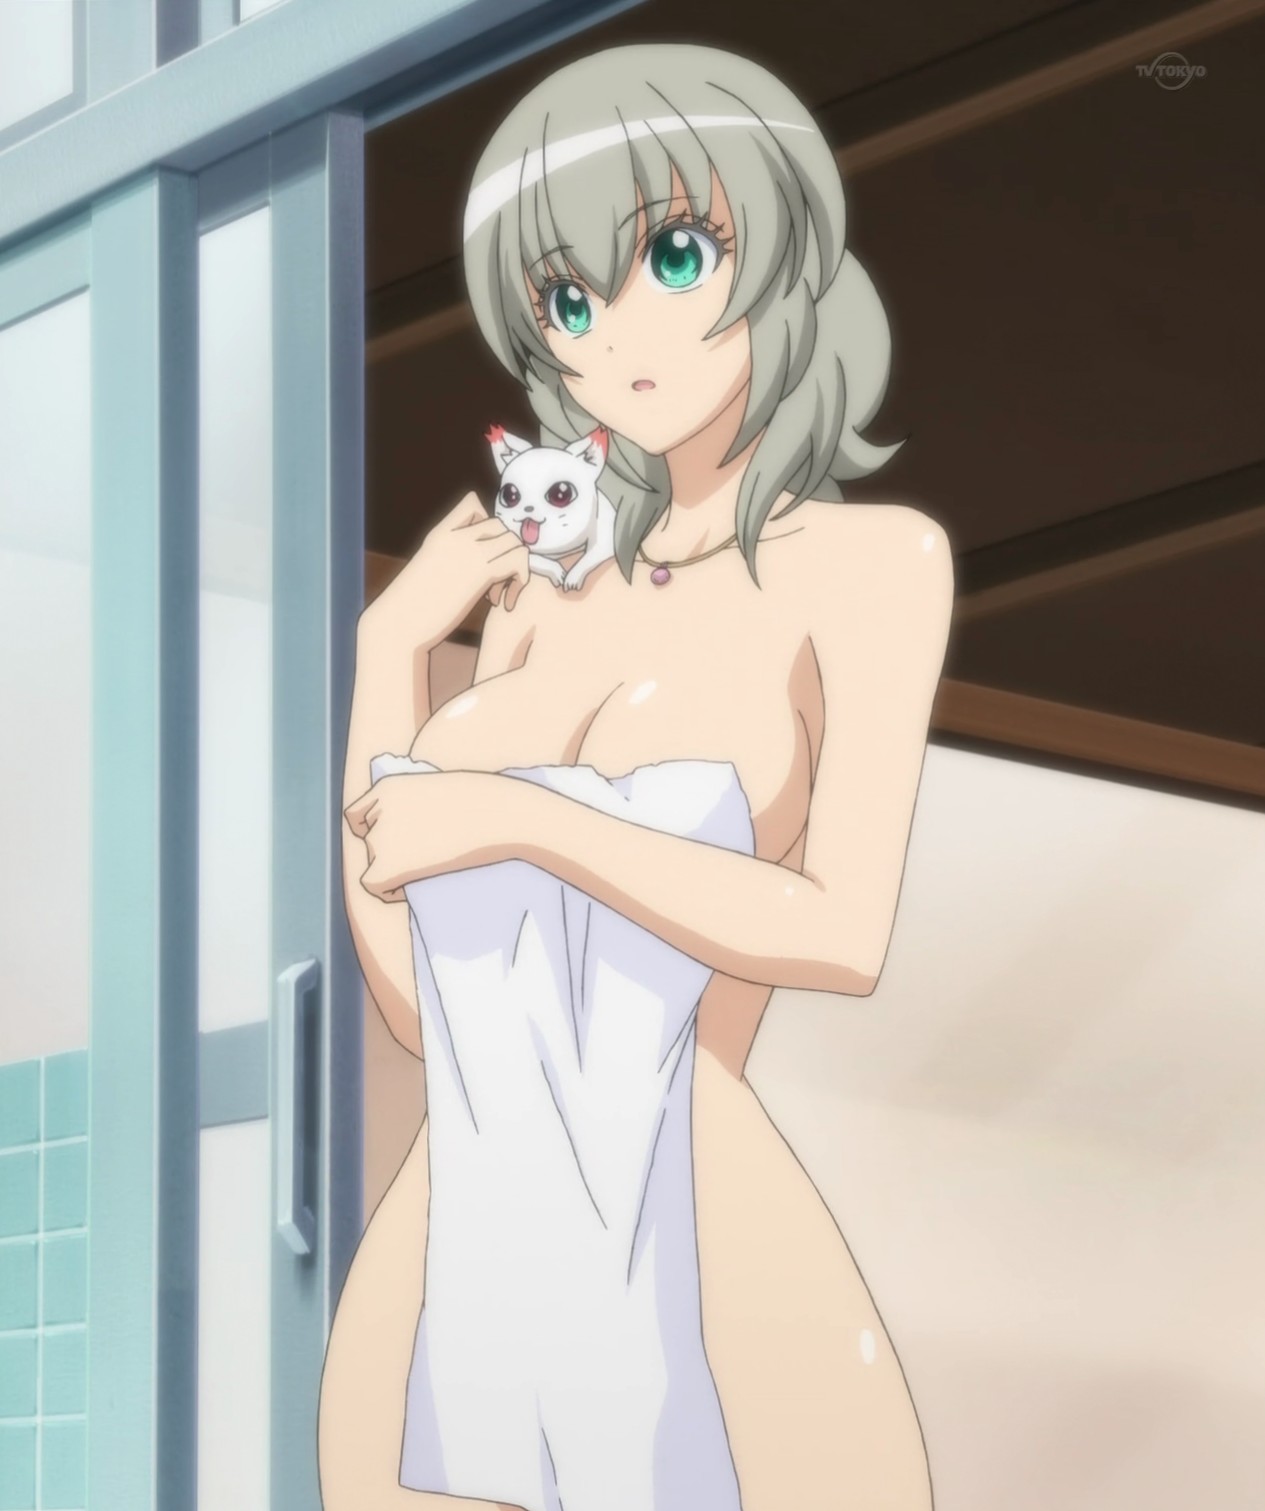 Ichiko Ready for a Bath.